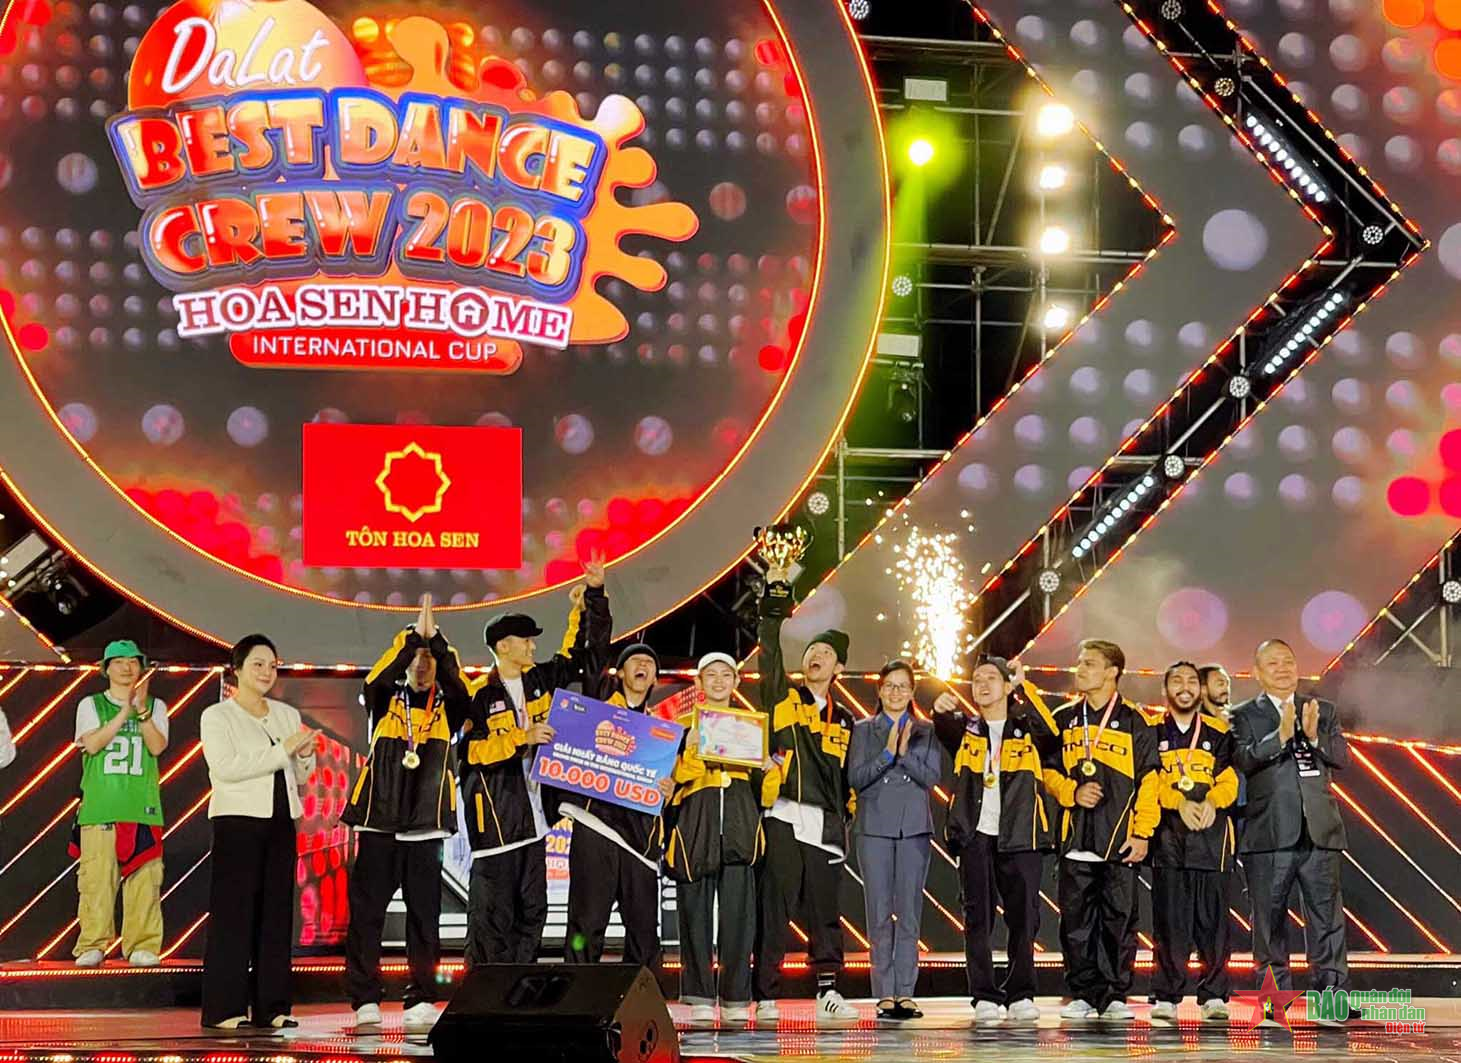 Dalat Best Dance Crew 2023 - Hoa Sen Home International Cup